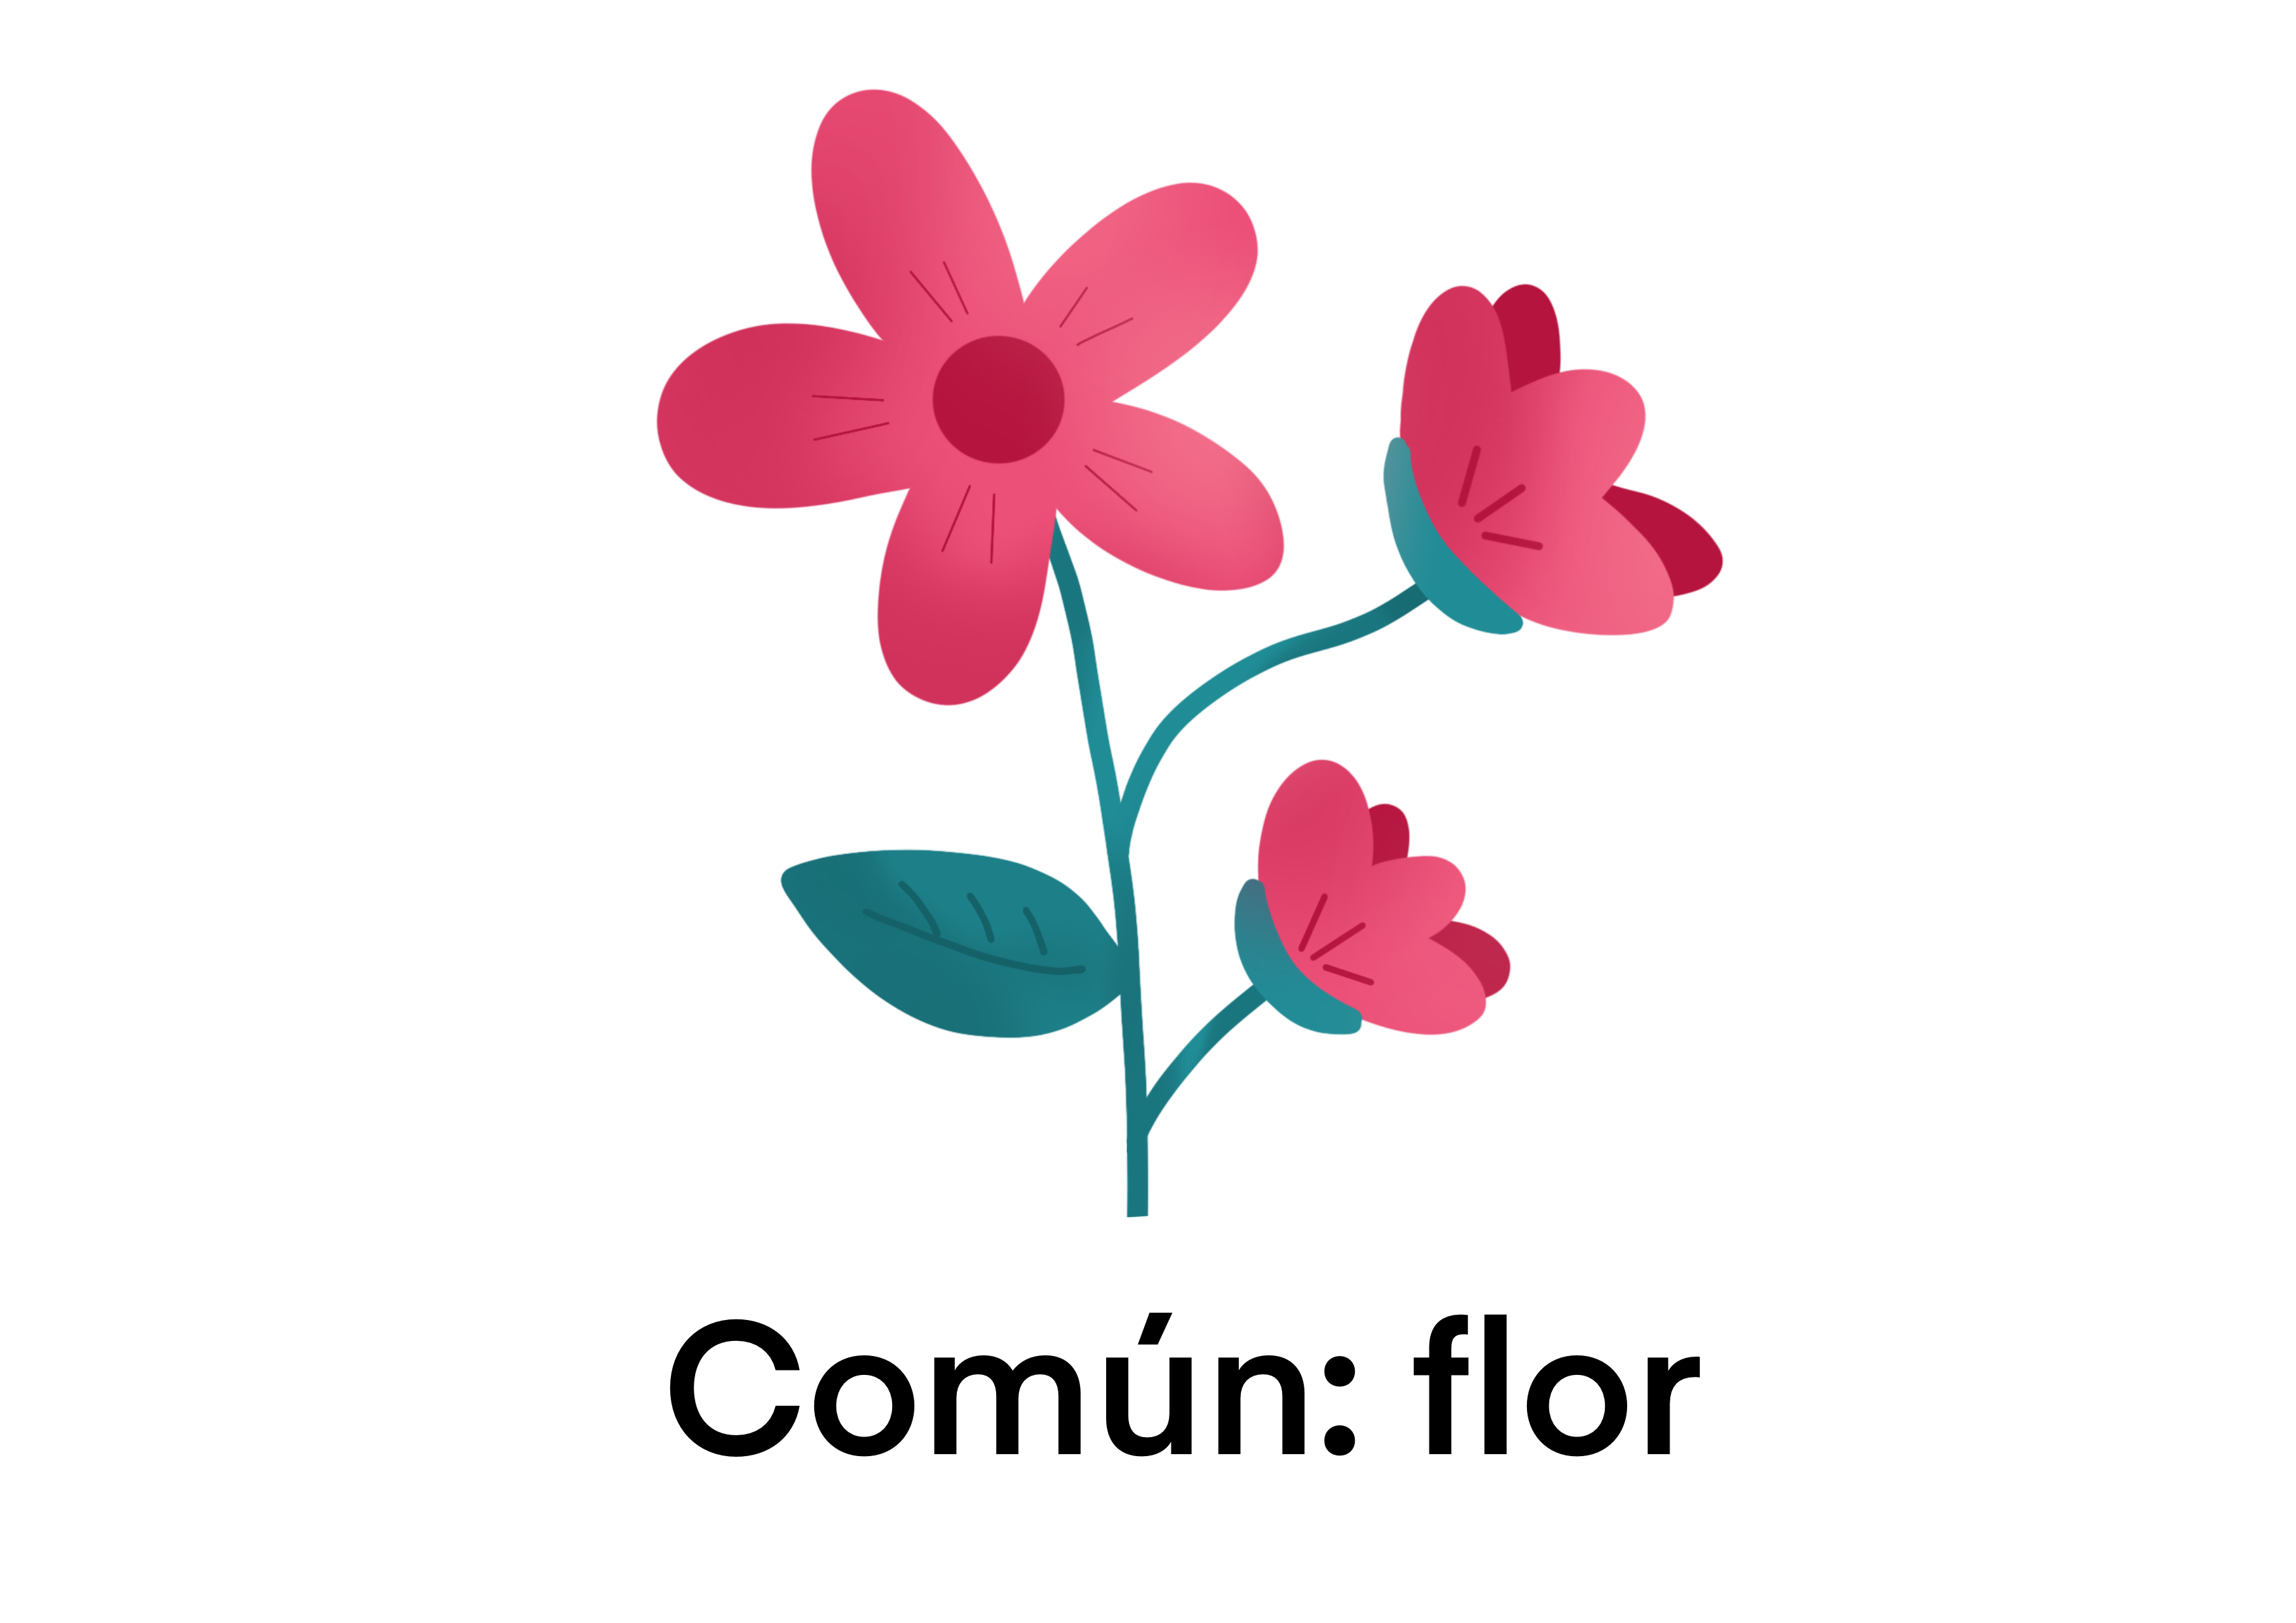 Flor: común